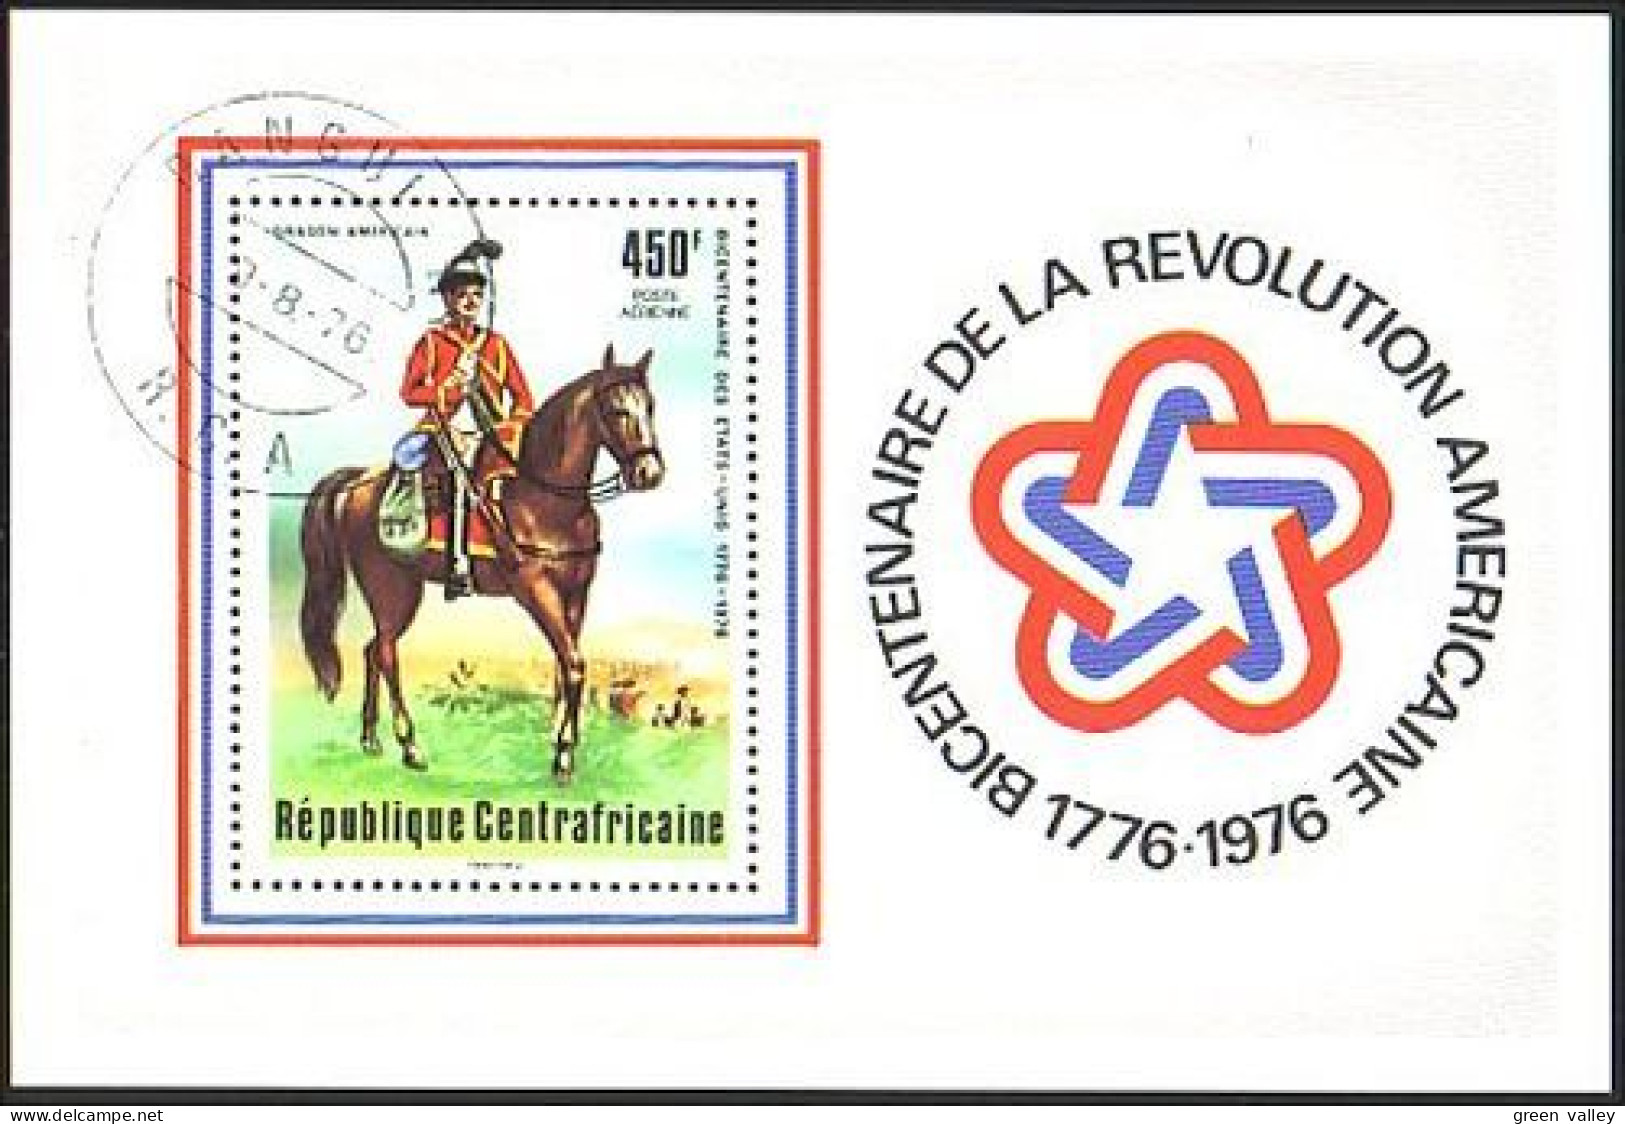 Centrafrique Revolution Americaine (A51-460b) - Indipendenza Stati Uniti